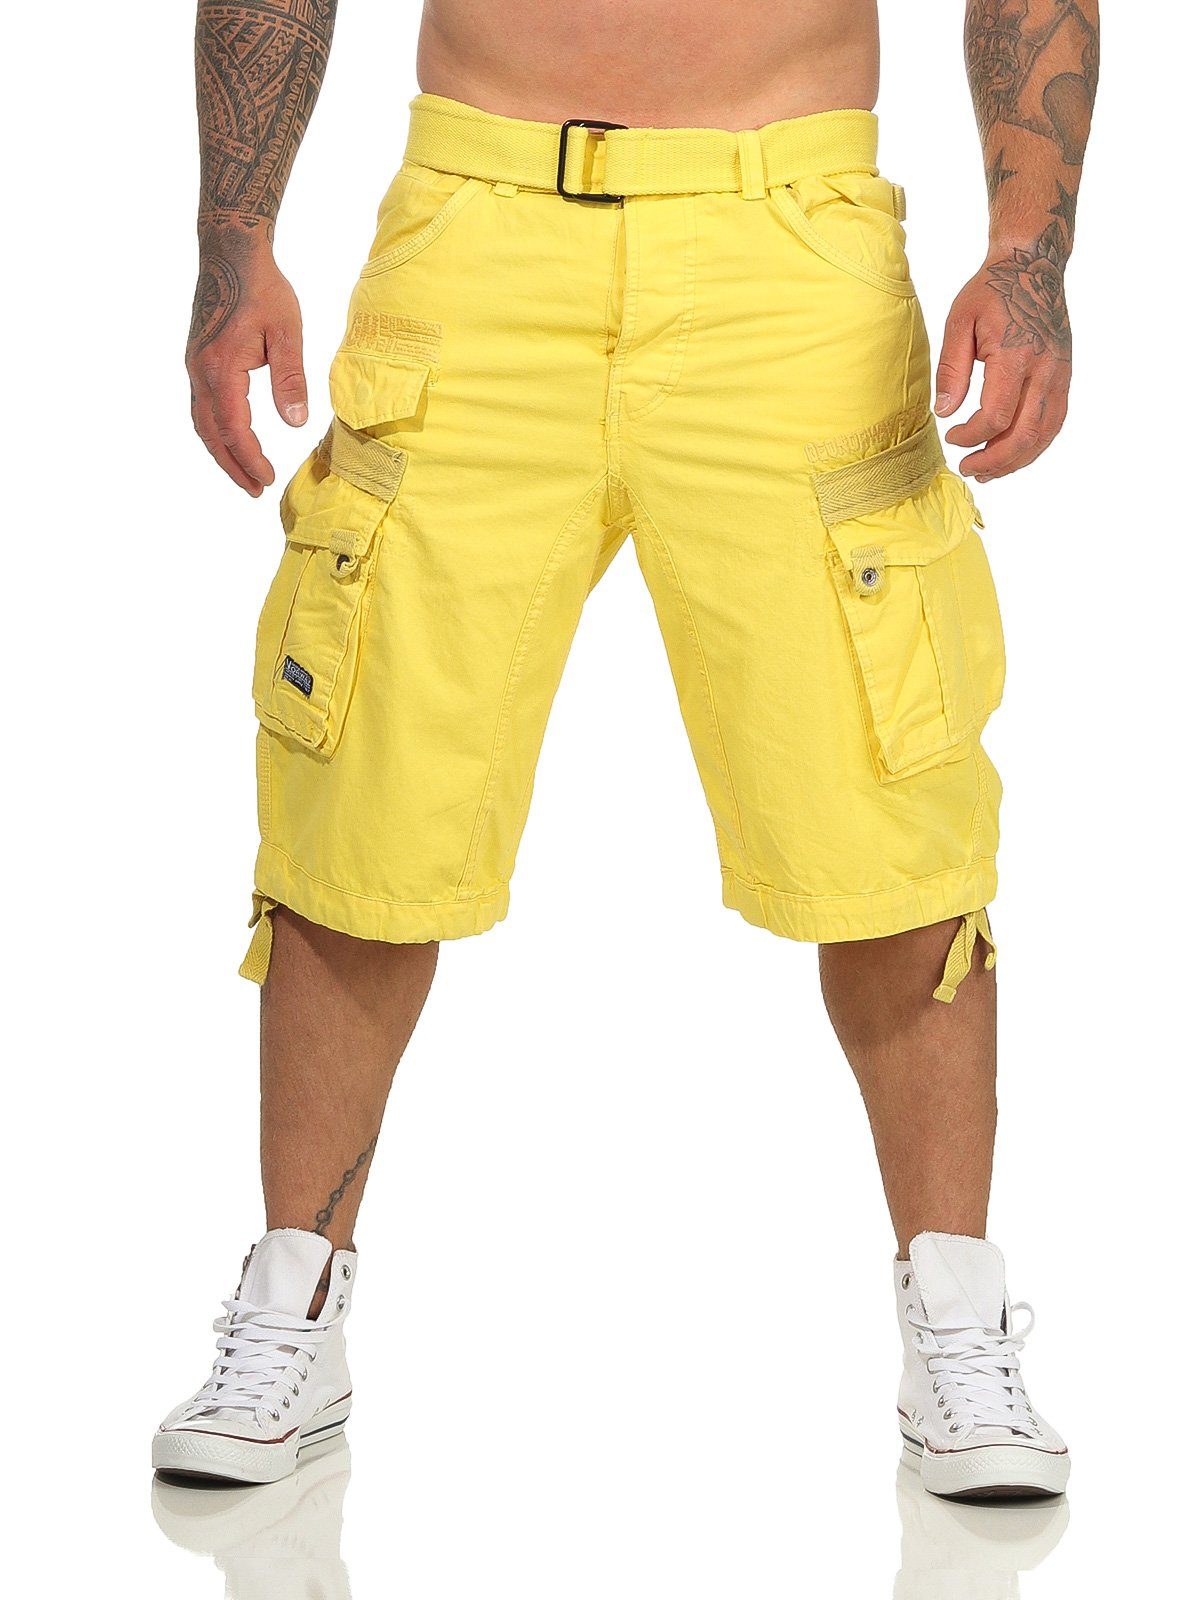 Geographical Norway Cargoshorts Herren Shorts PANORAMIQUE (mit abnehmbarem Gürtel) Shorts, kurze Hose, unifarben / camouflage yellow | Cargoshorts